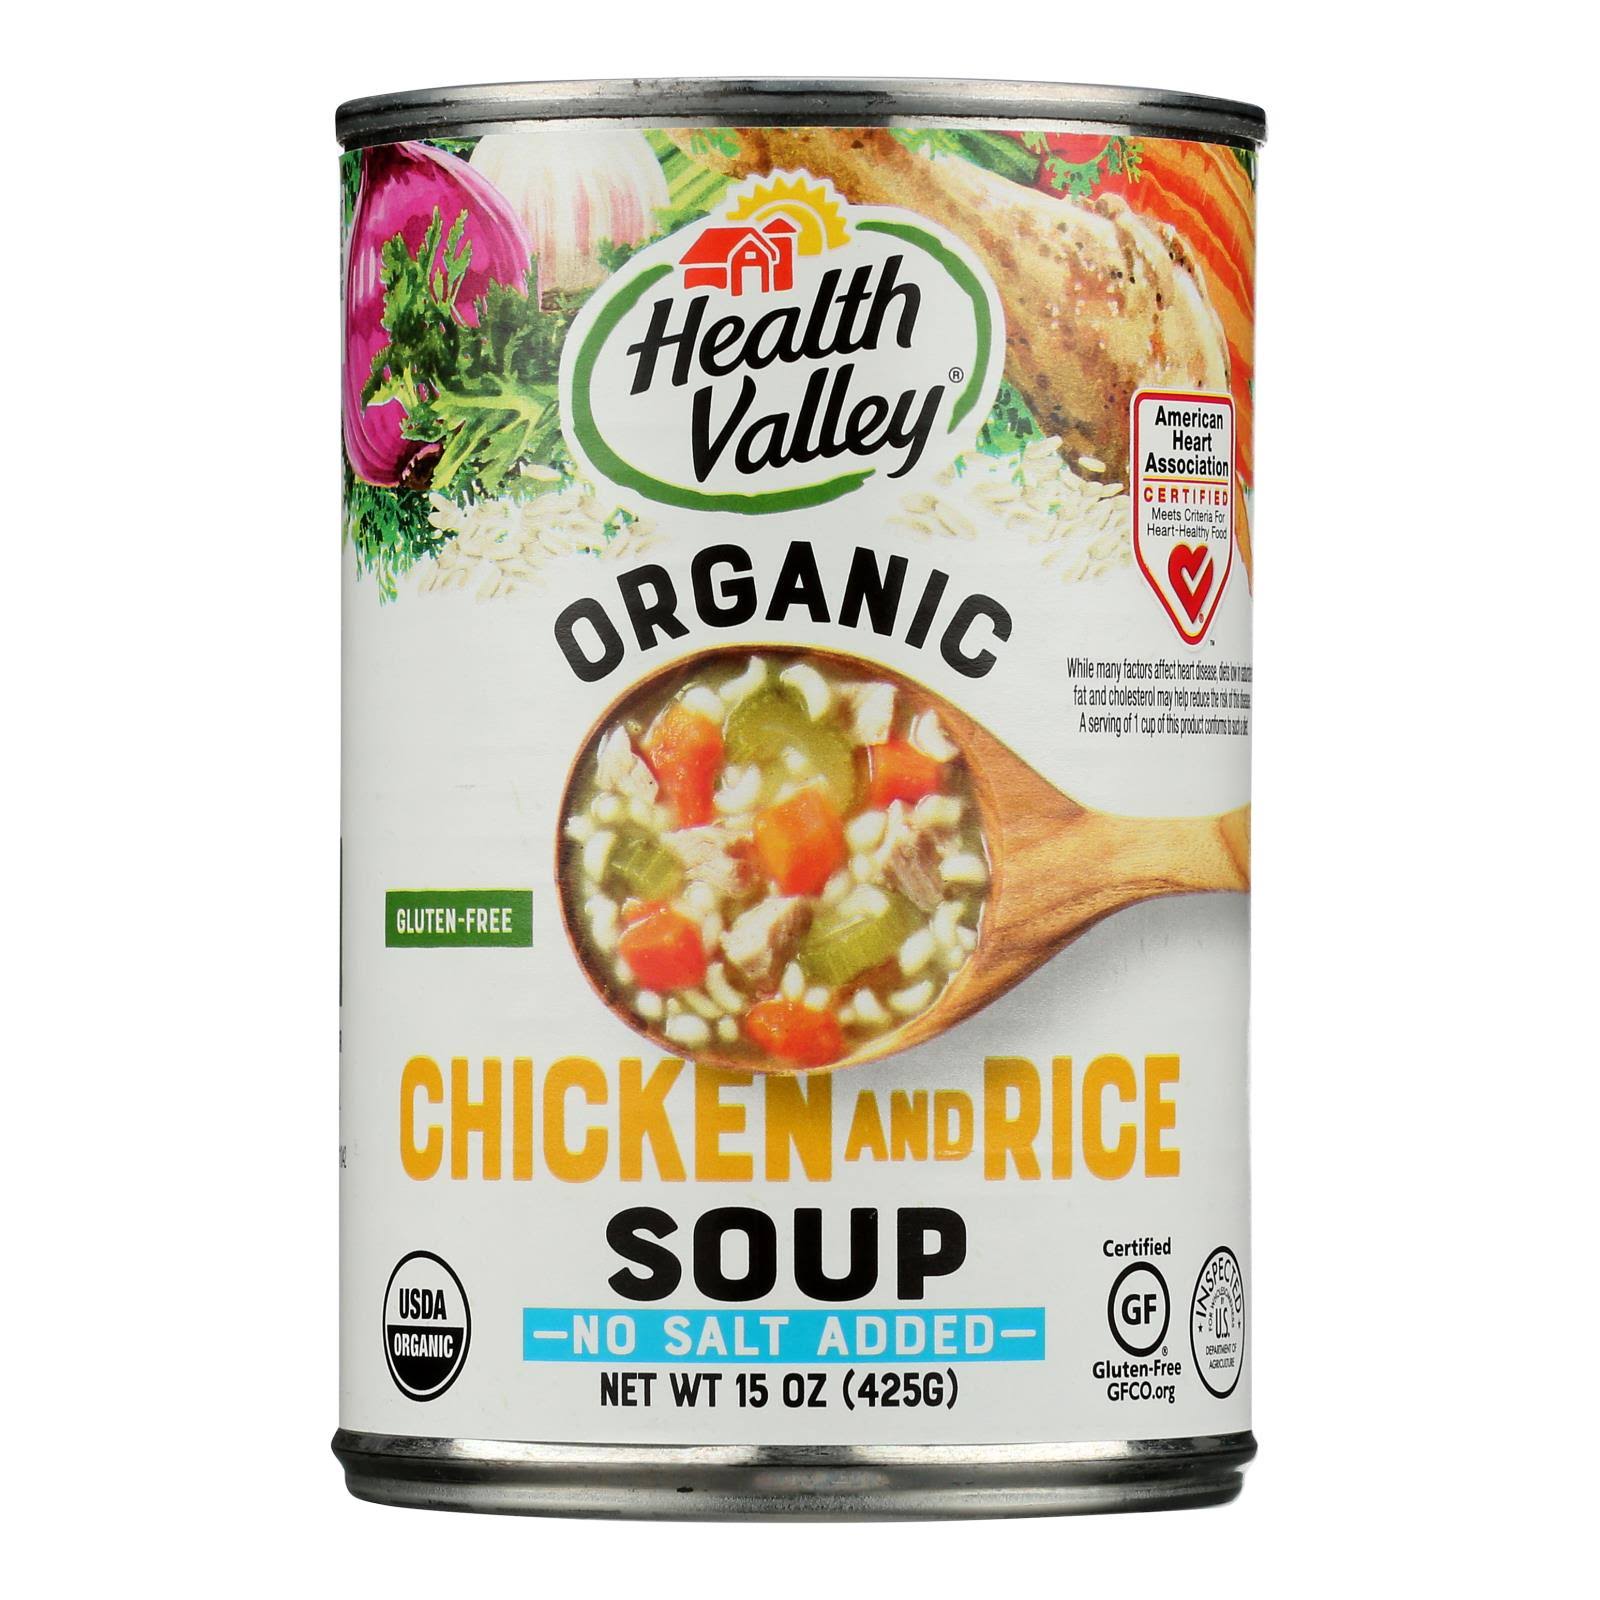 Health Valley Organic Chicken Rice Soup - No Salt Added, 425g